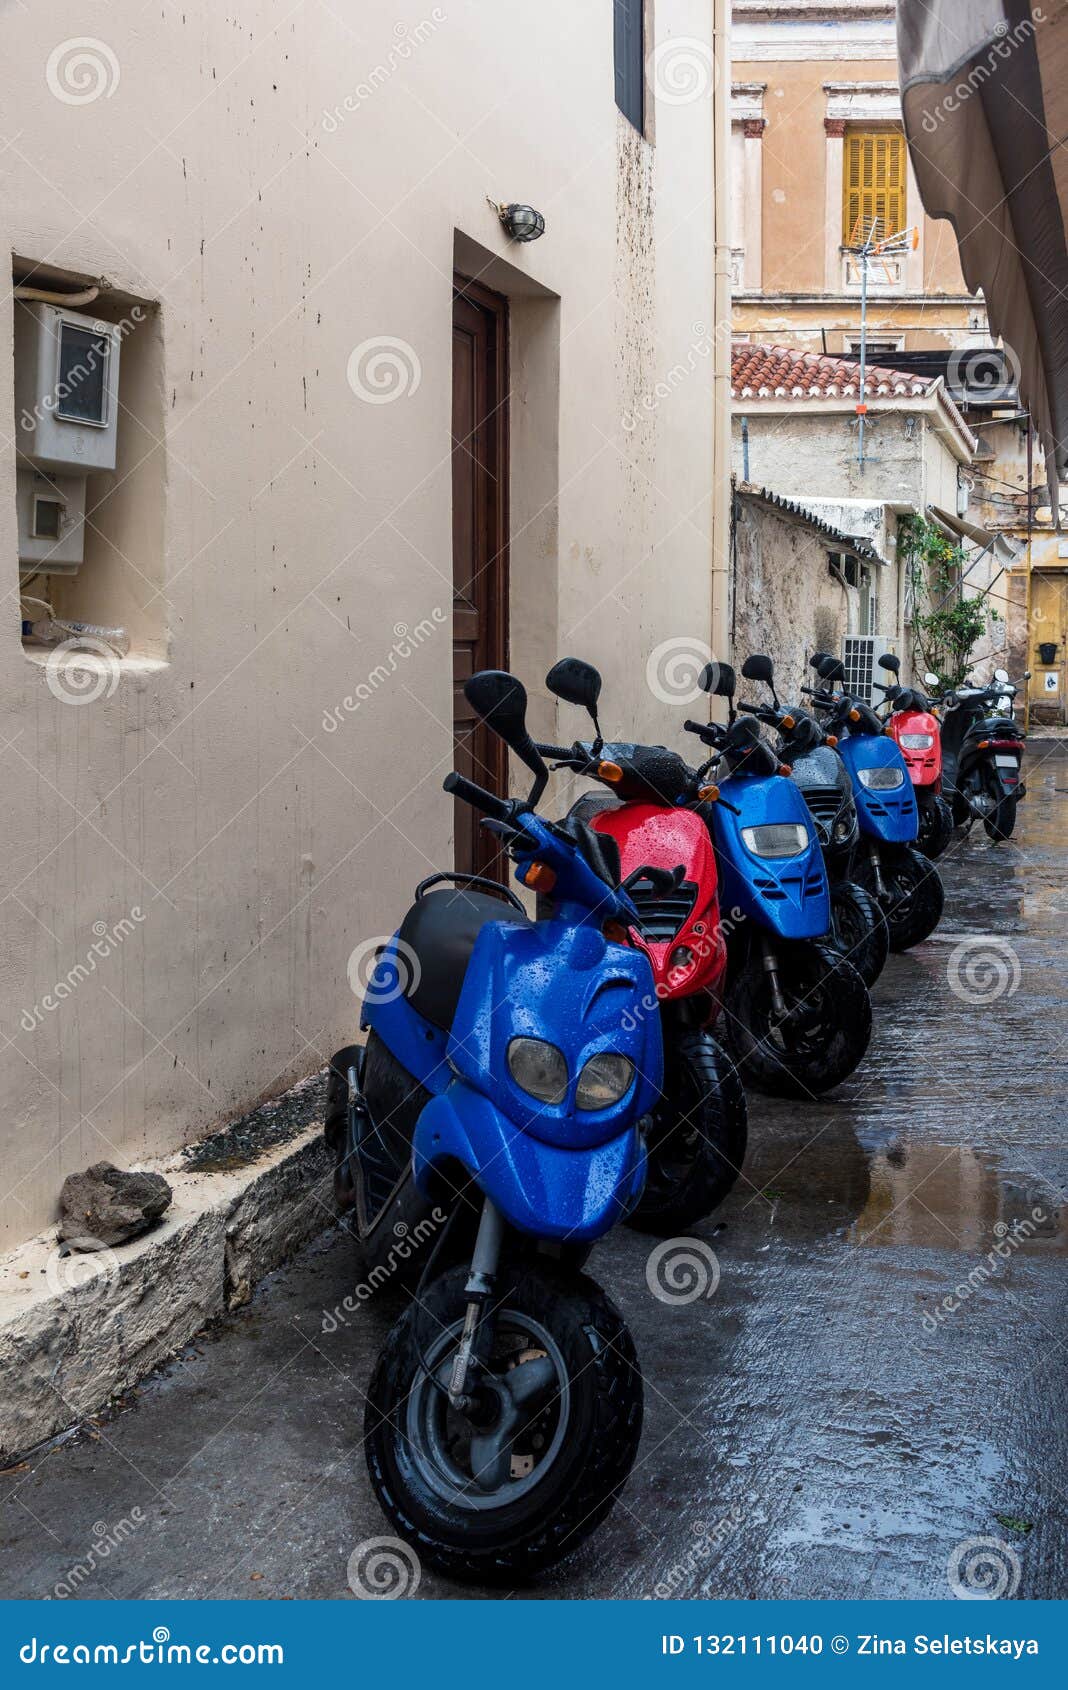 Cikes rouges et bleus pour le loyer. Vélos rouges et bleus dans l'allée humide disponible pour le loyer